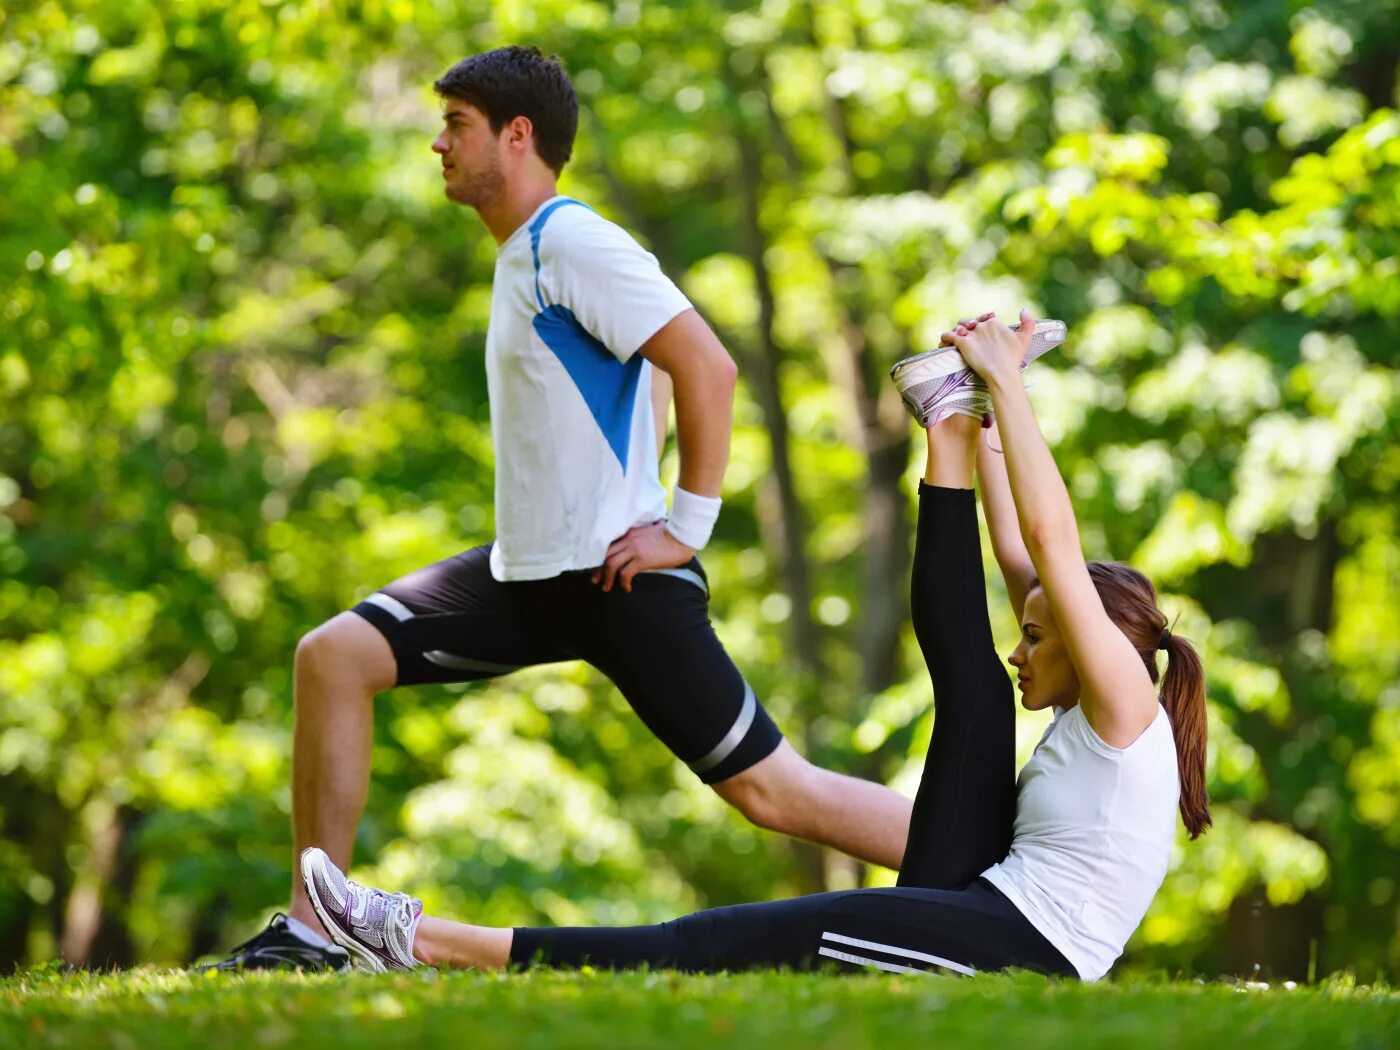 What sport do you do regularly. Физические упражнения. Спортивные люди. Здоровый образ жизни. Активный образ жизни.